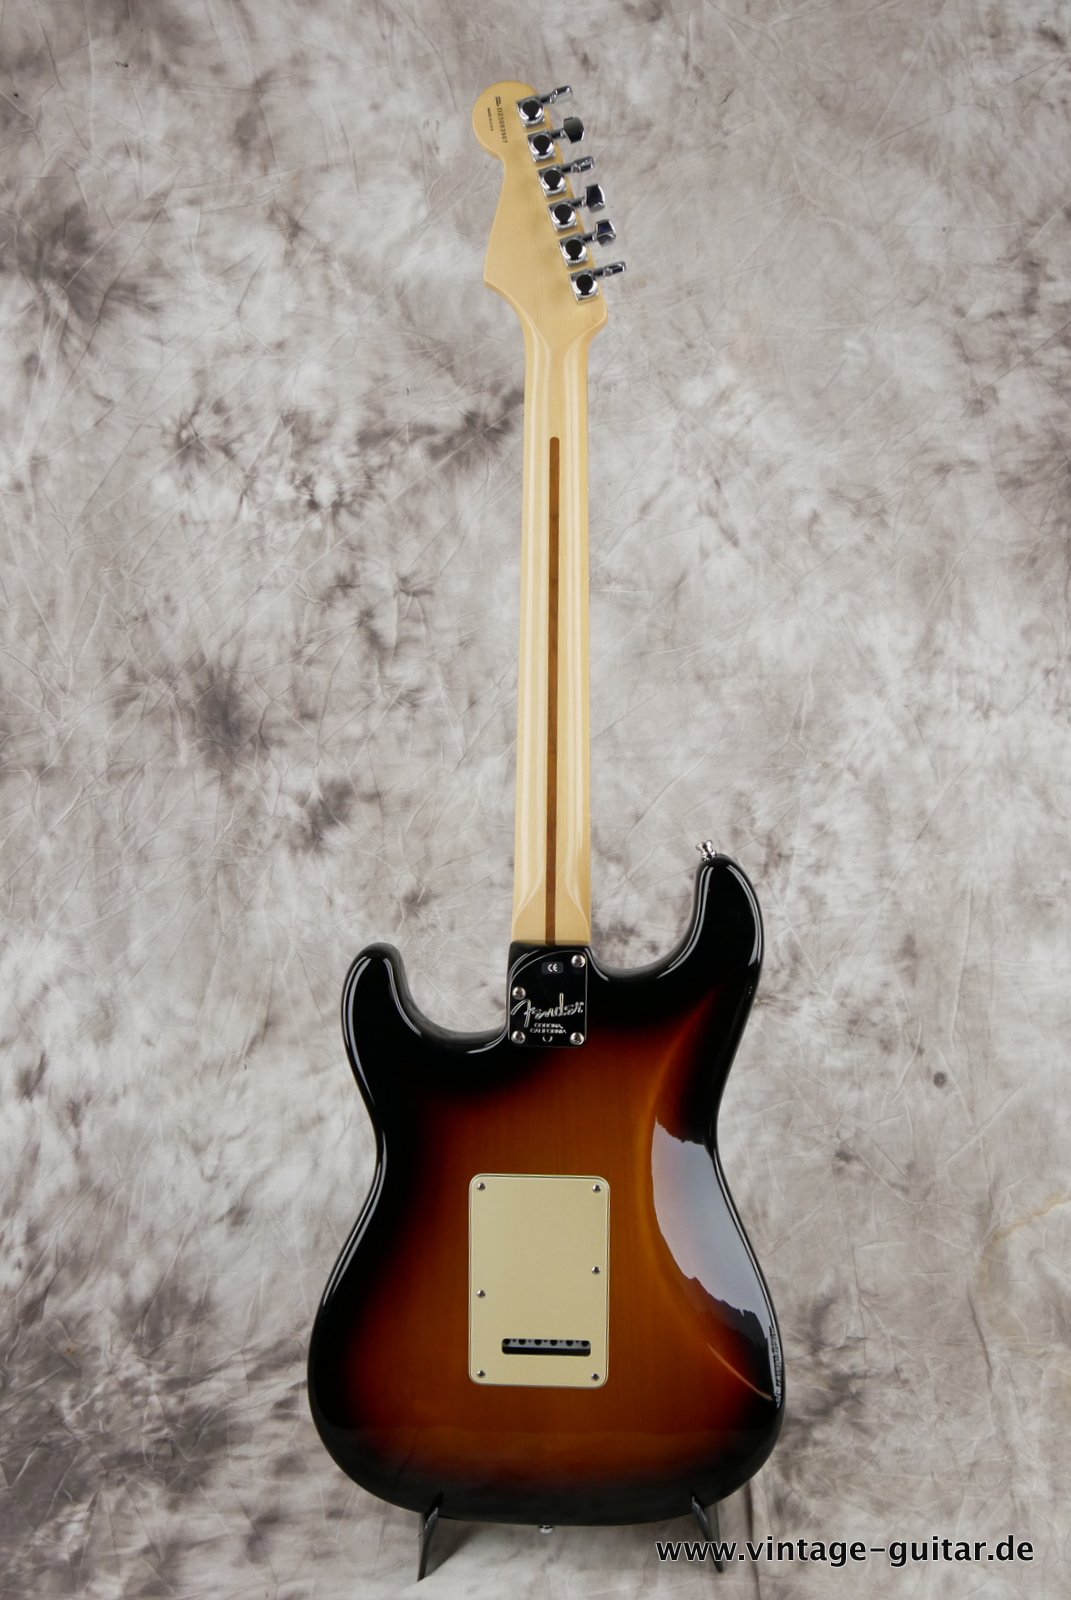 img/vintage/5280/Fender_Startocaster_American_Deluxe_sunburst_samarium-cobalt-noiseless_tremolo_2005-002.JPG